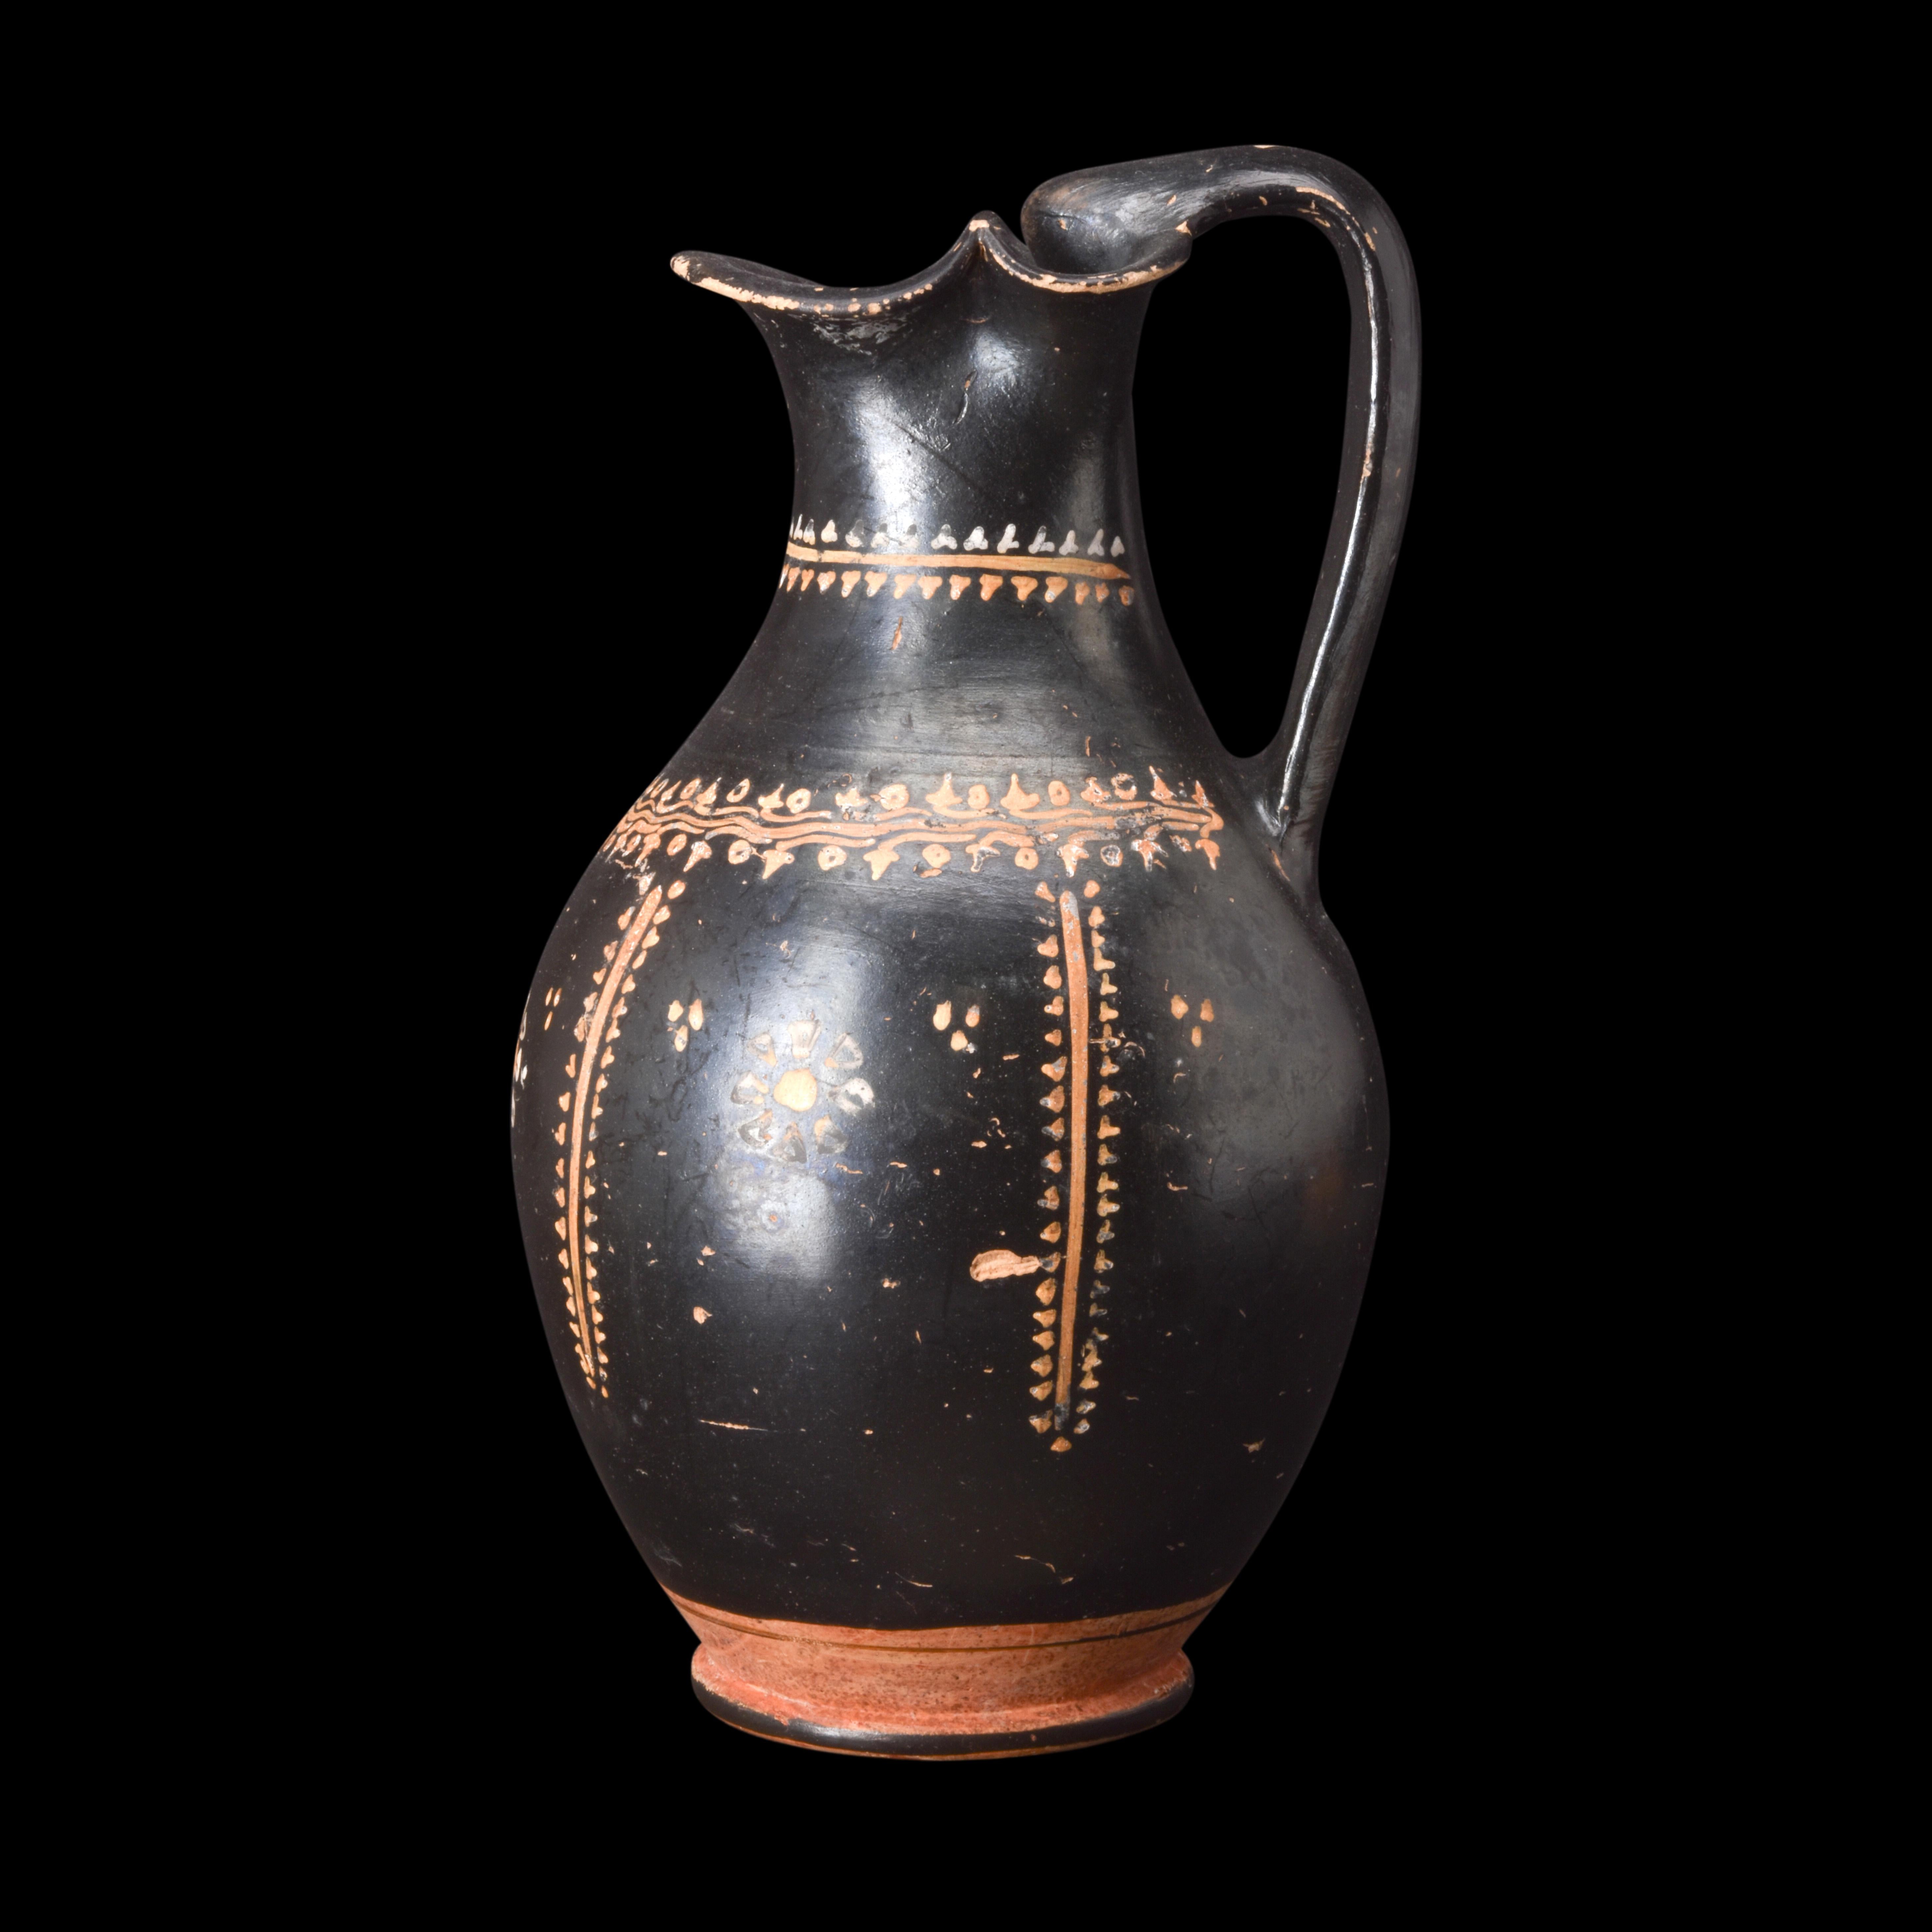 Eine schwarz glasierte Oinochoe, die die charakteristischen Merkmale dieser speziellen griechischen Keramik aufweist. Das Gefäß hat einen abgerundeten Körper mit einer zarten Riffelung, die sich zum Fuß hin anmutig verjüngt. Der Hals des Gefäßes